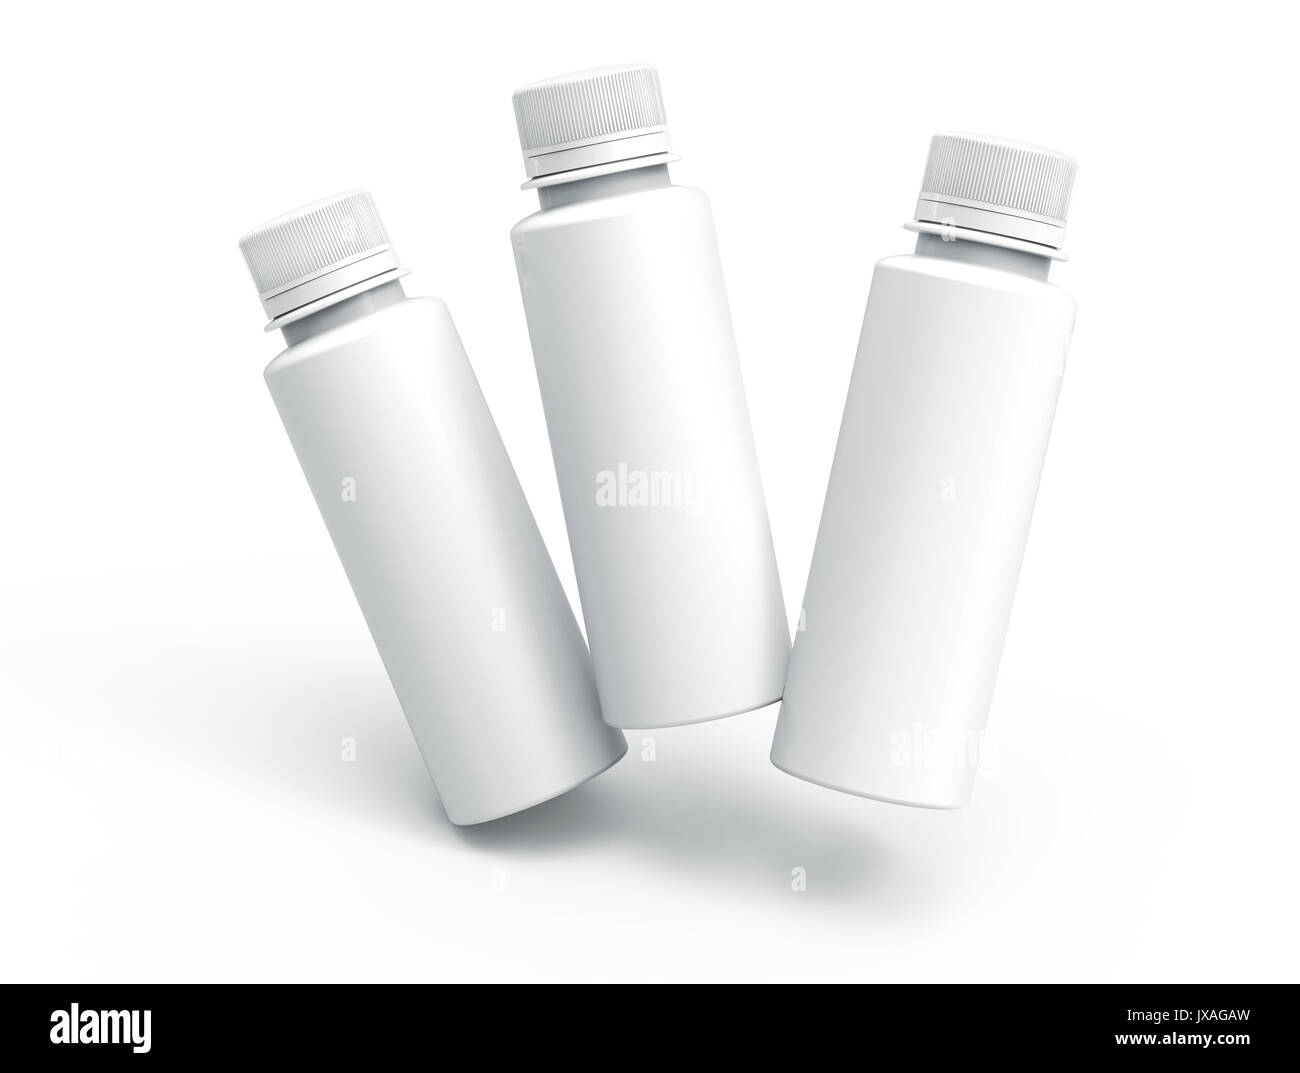 Plastikflasche für Getränke, leere Flasche mockup Vorlage in 3D Rendering auf Weiß für Design wird isoliert, drei Flaschen, die in der Luft schweben Stockfoto